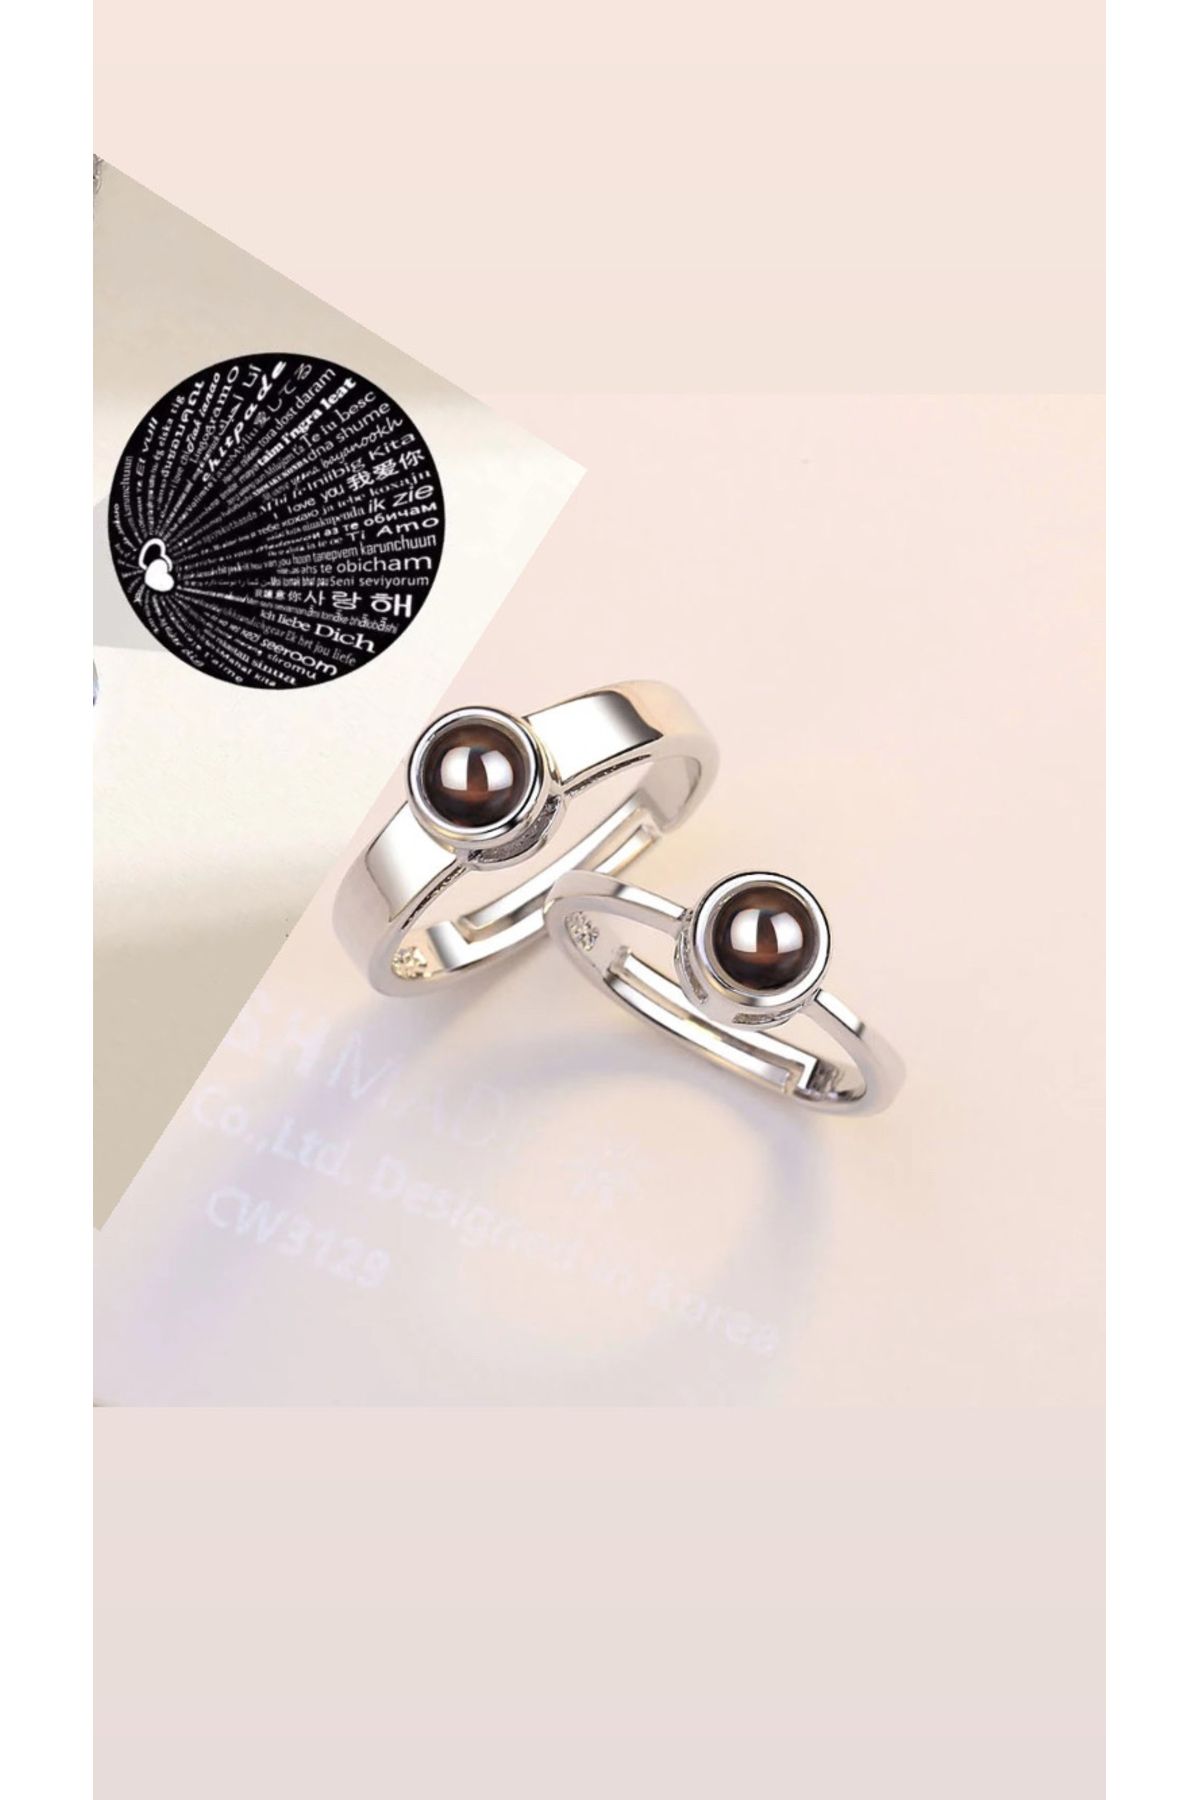 LadyBug Store 100 dilde Aşk itirafı temalı yansıtmalı gümüş kaplama çift yüzüğü